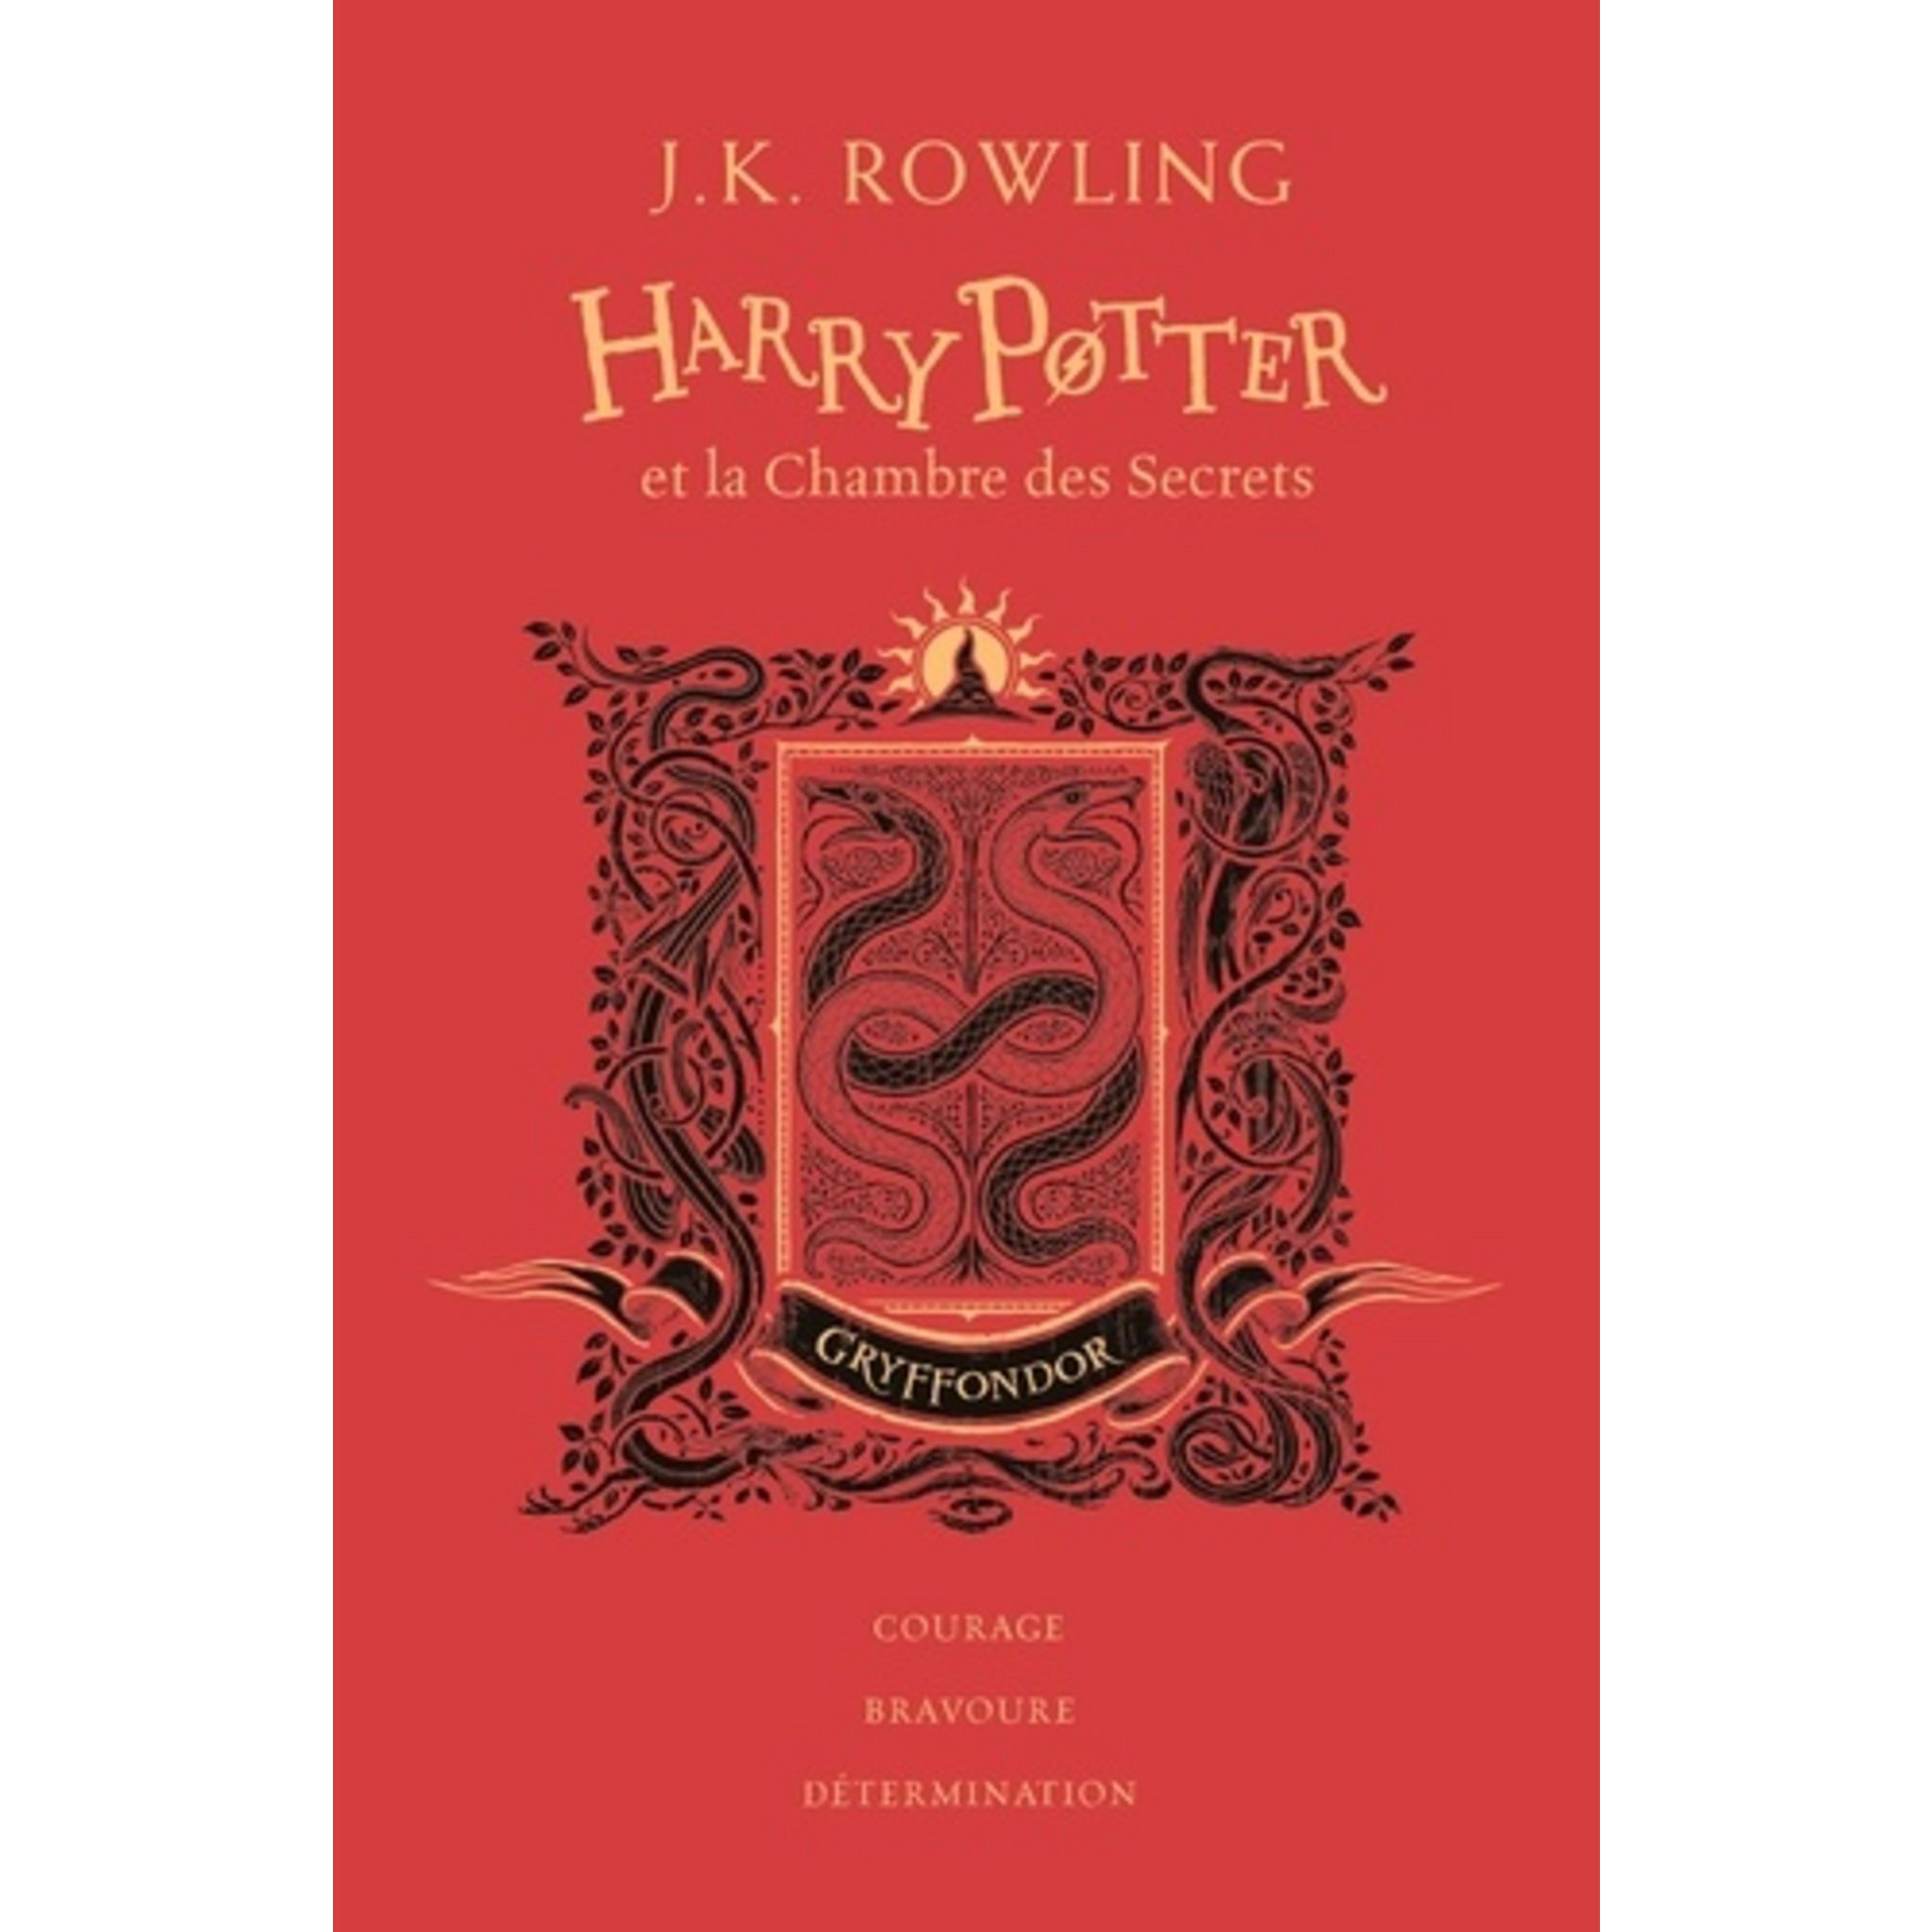 Edition Serpentard 20 ans Harry Potter et la Chambre des Secrets - 3  Reliques Harry Potter